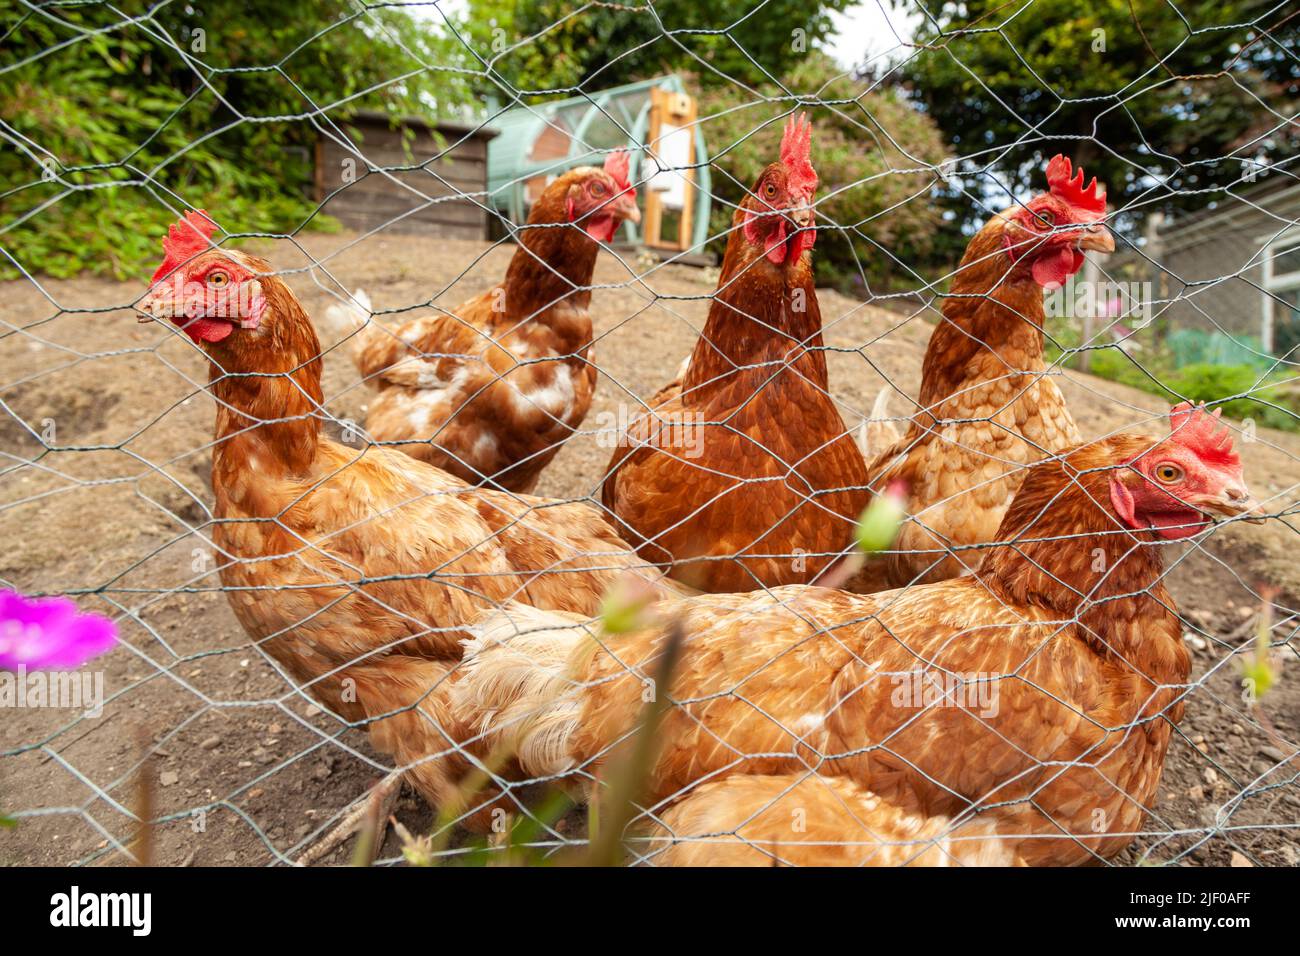 Un groupe de poulets debout à l'extérieur derrière une clôture en fil de fer Banque D'Images